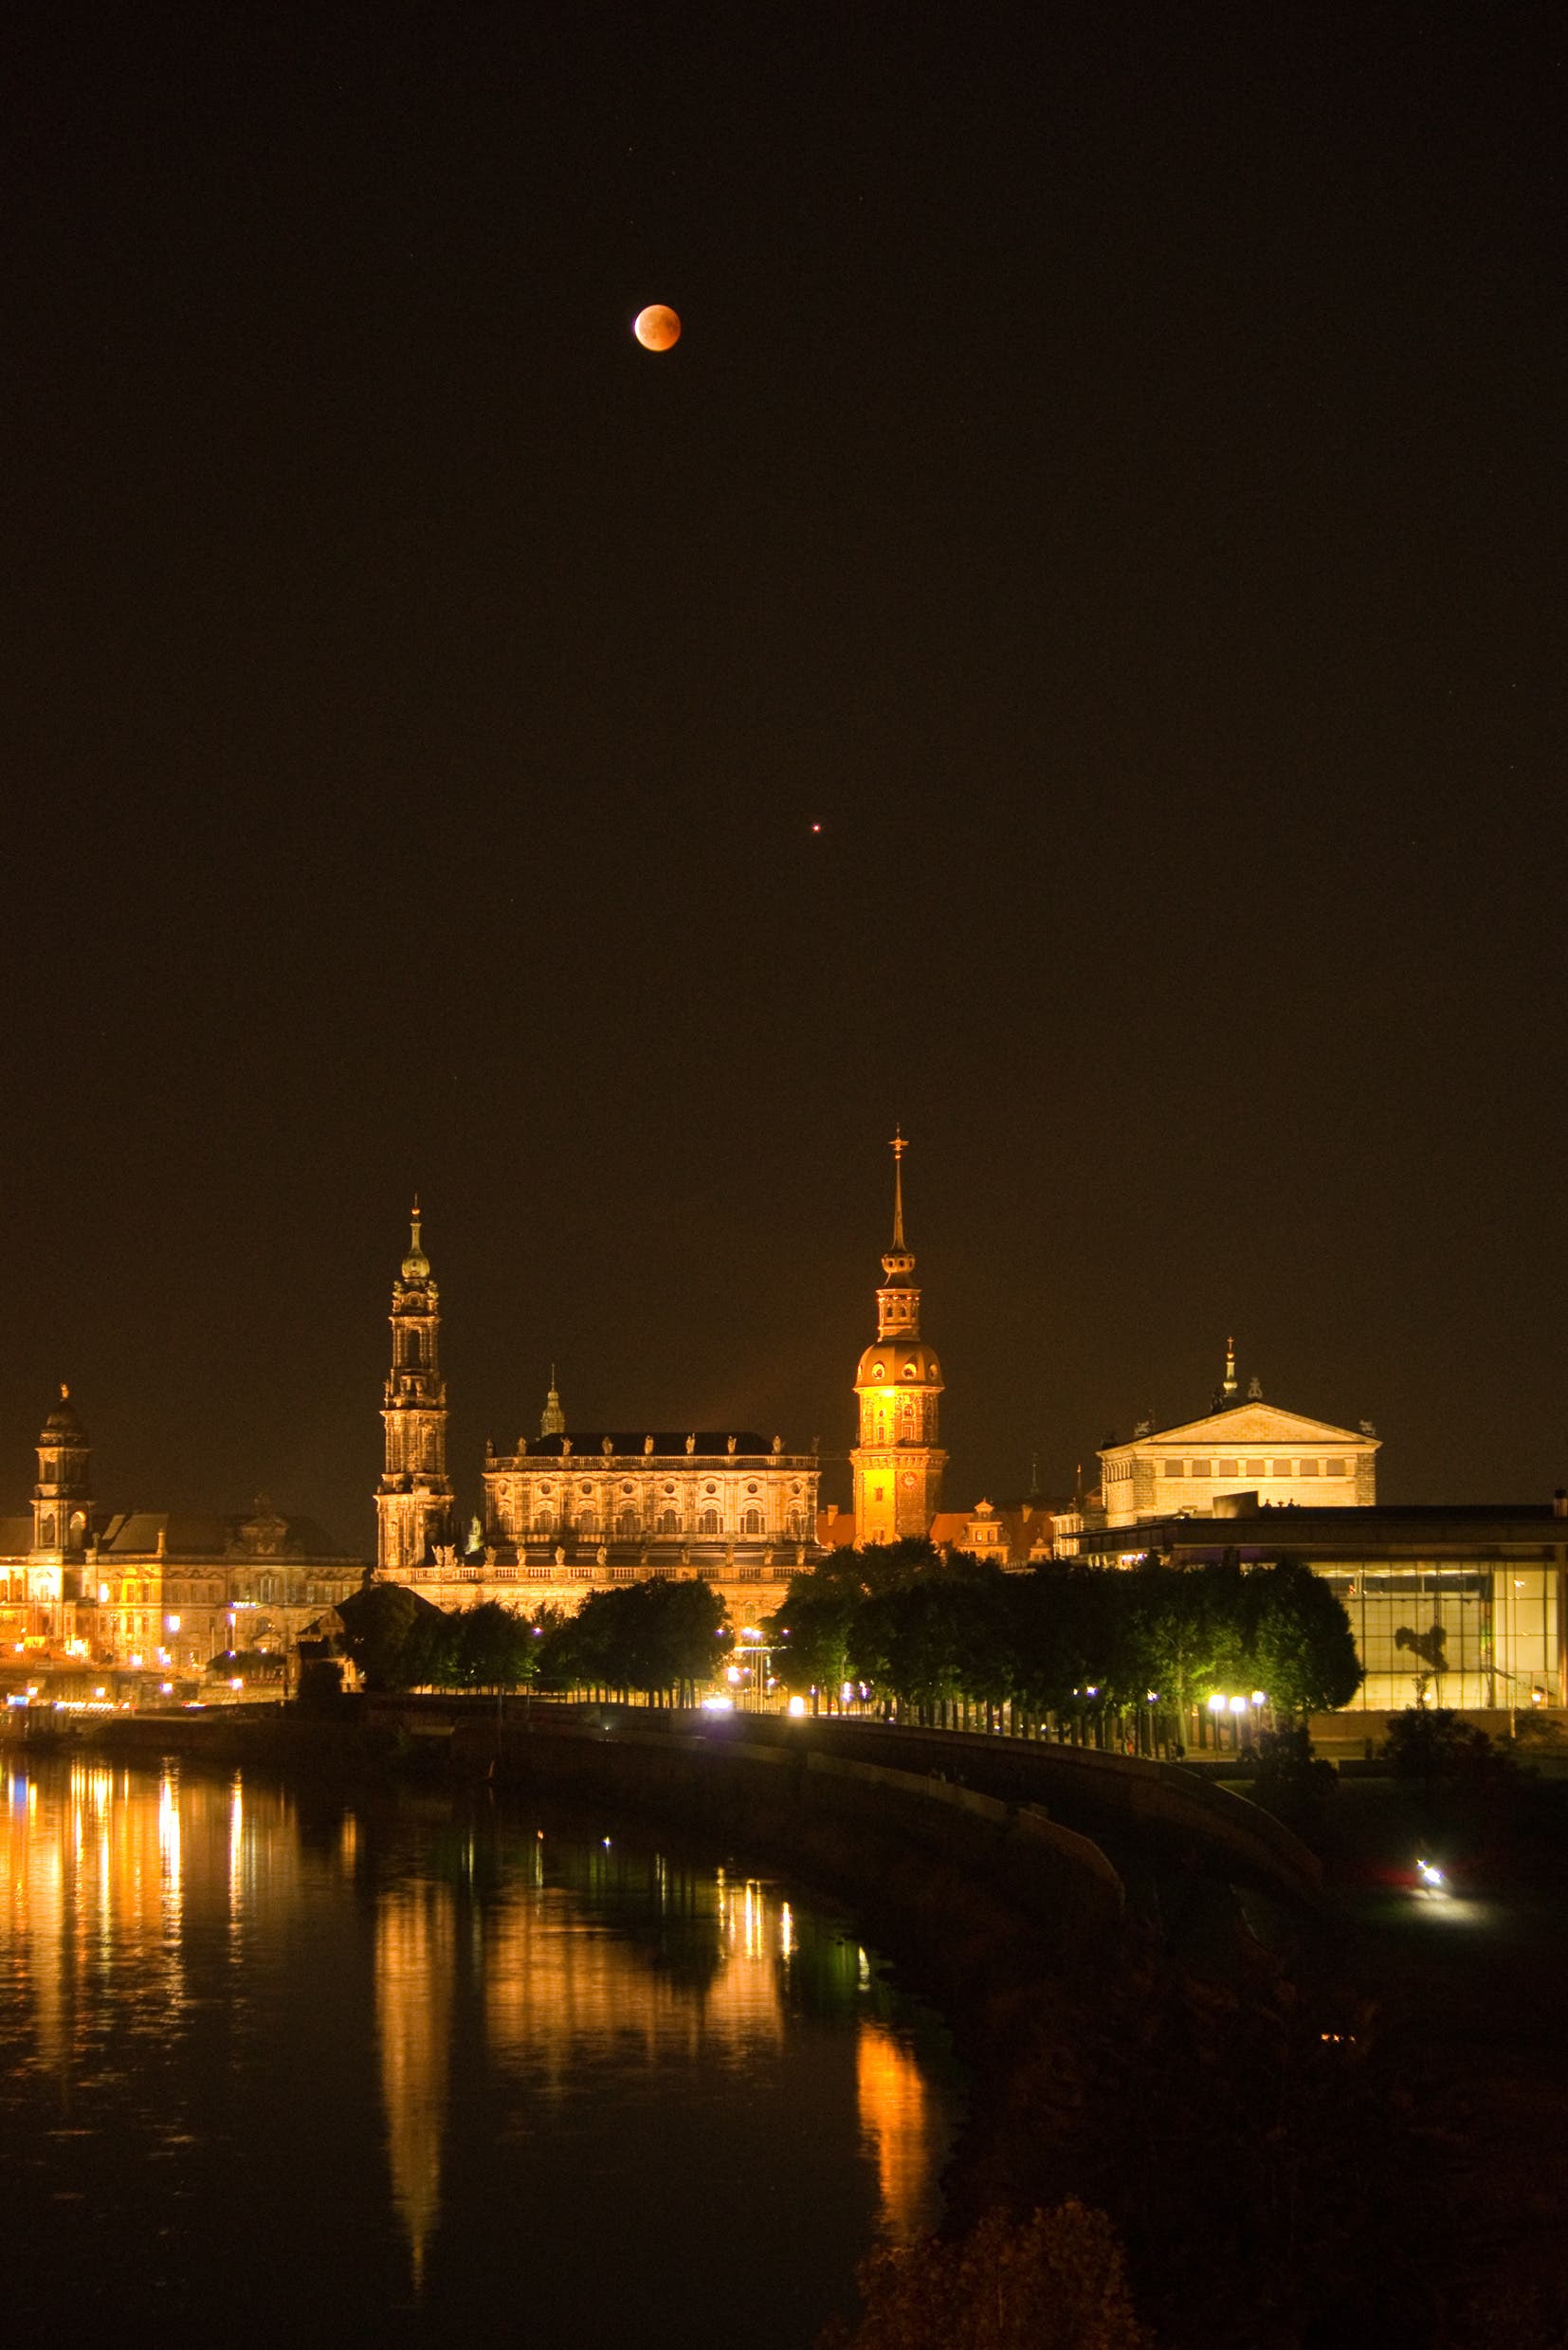 Mondfinsternis über Dresden - Beginn der Austrittsphase